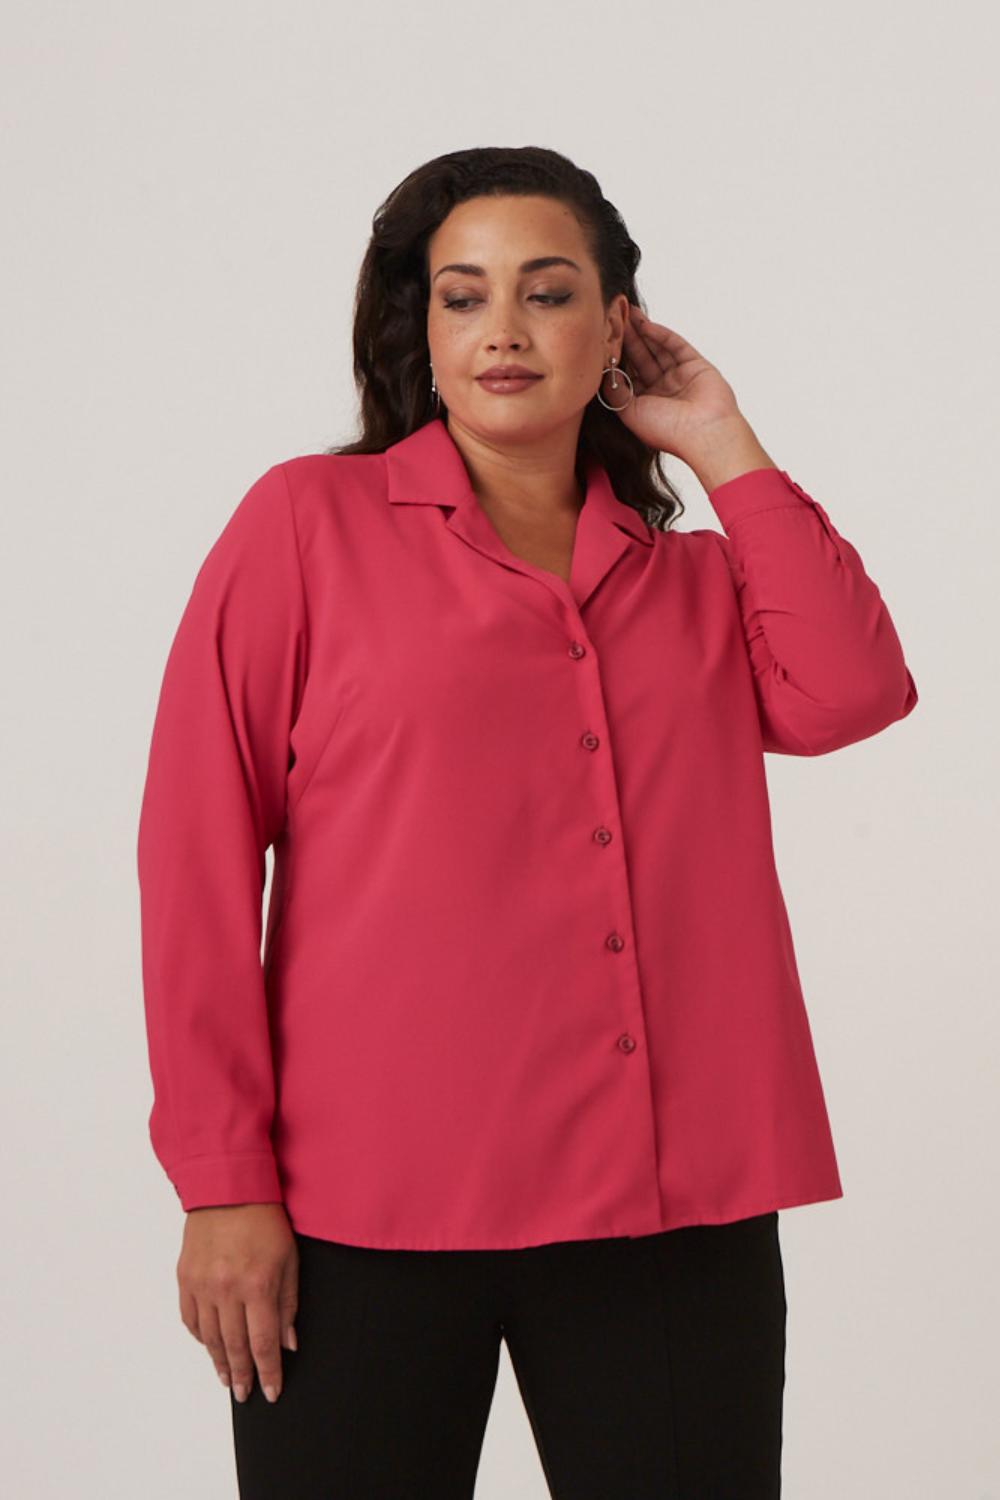 Розовая блузка из шелка большого размера купить онлайн в интернет-магазине с доставкой 